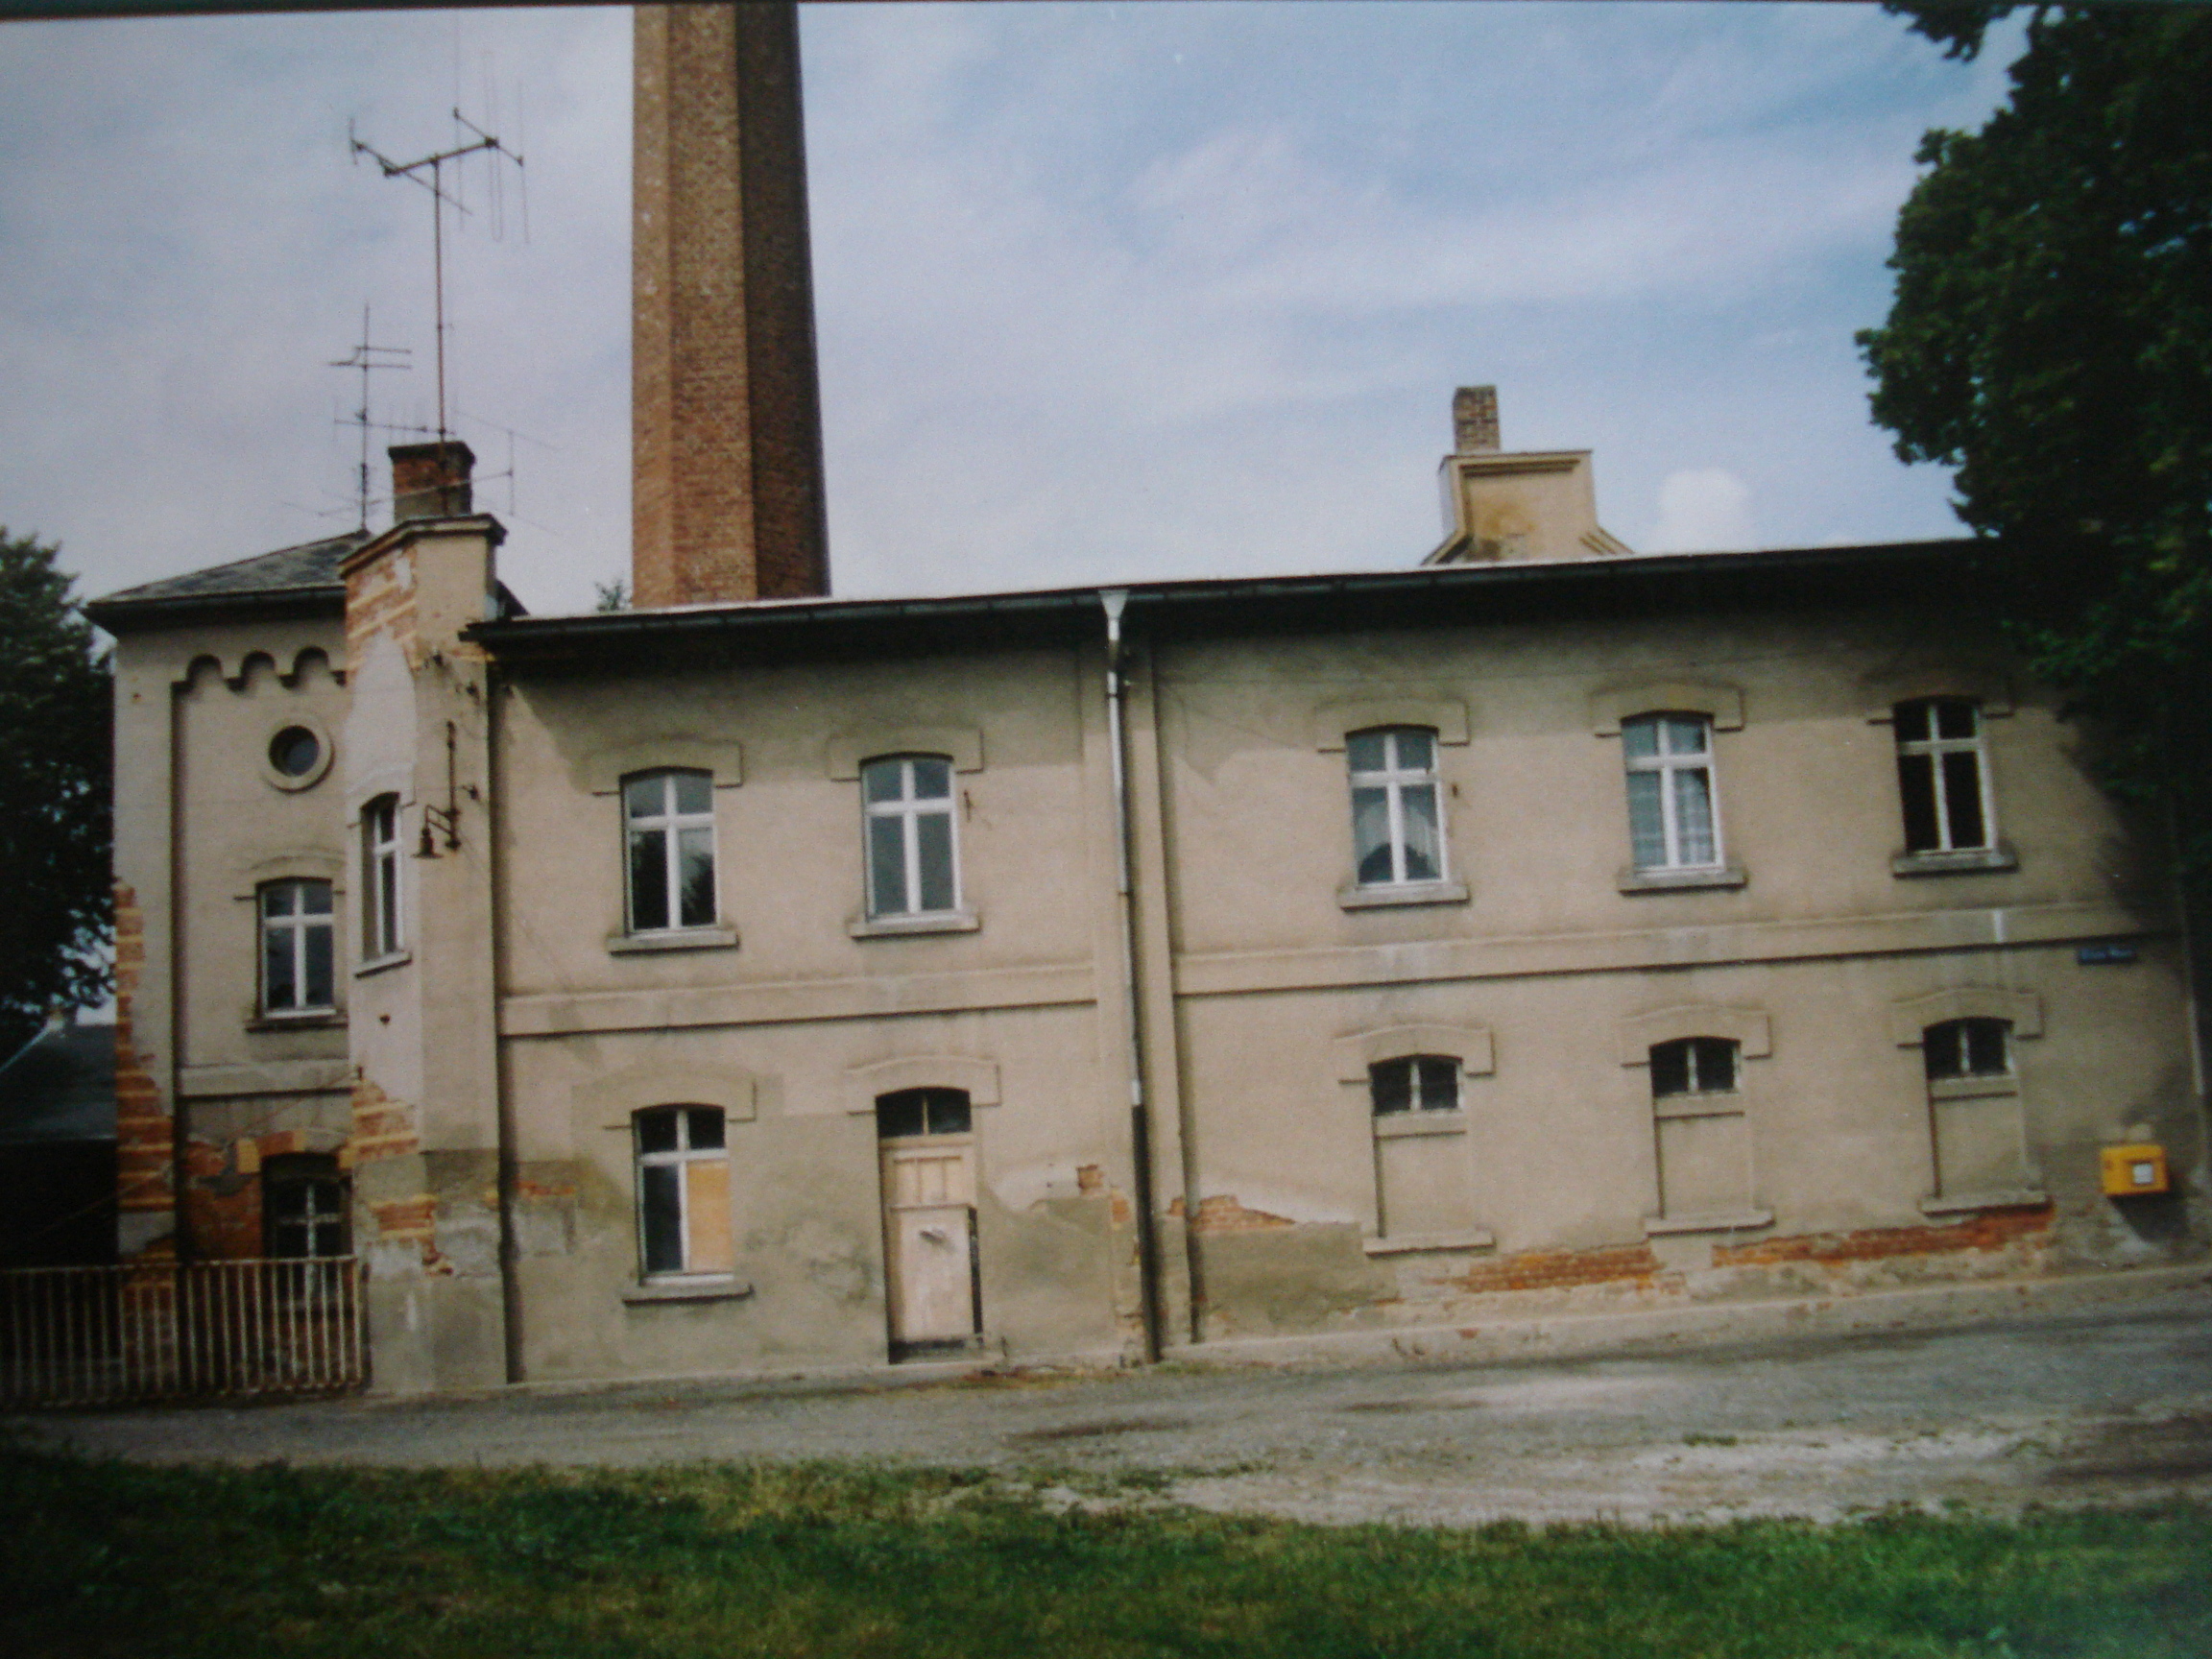 Greiz, Carolinenstraße 63, Villa Familie Günther, Baujahr 1878